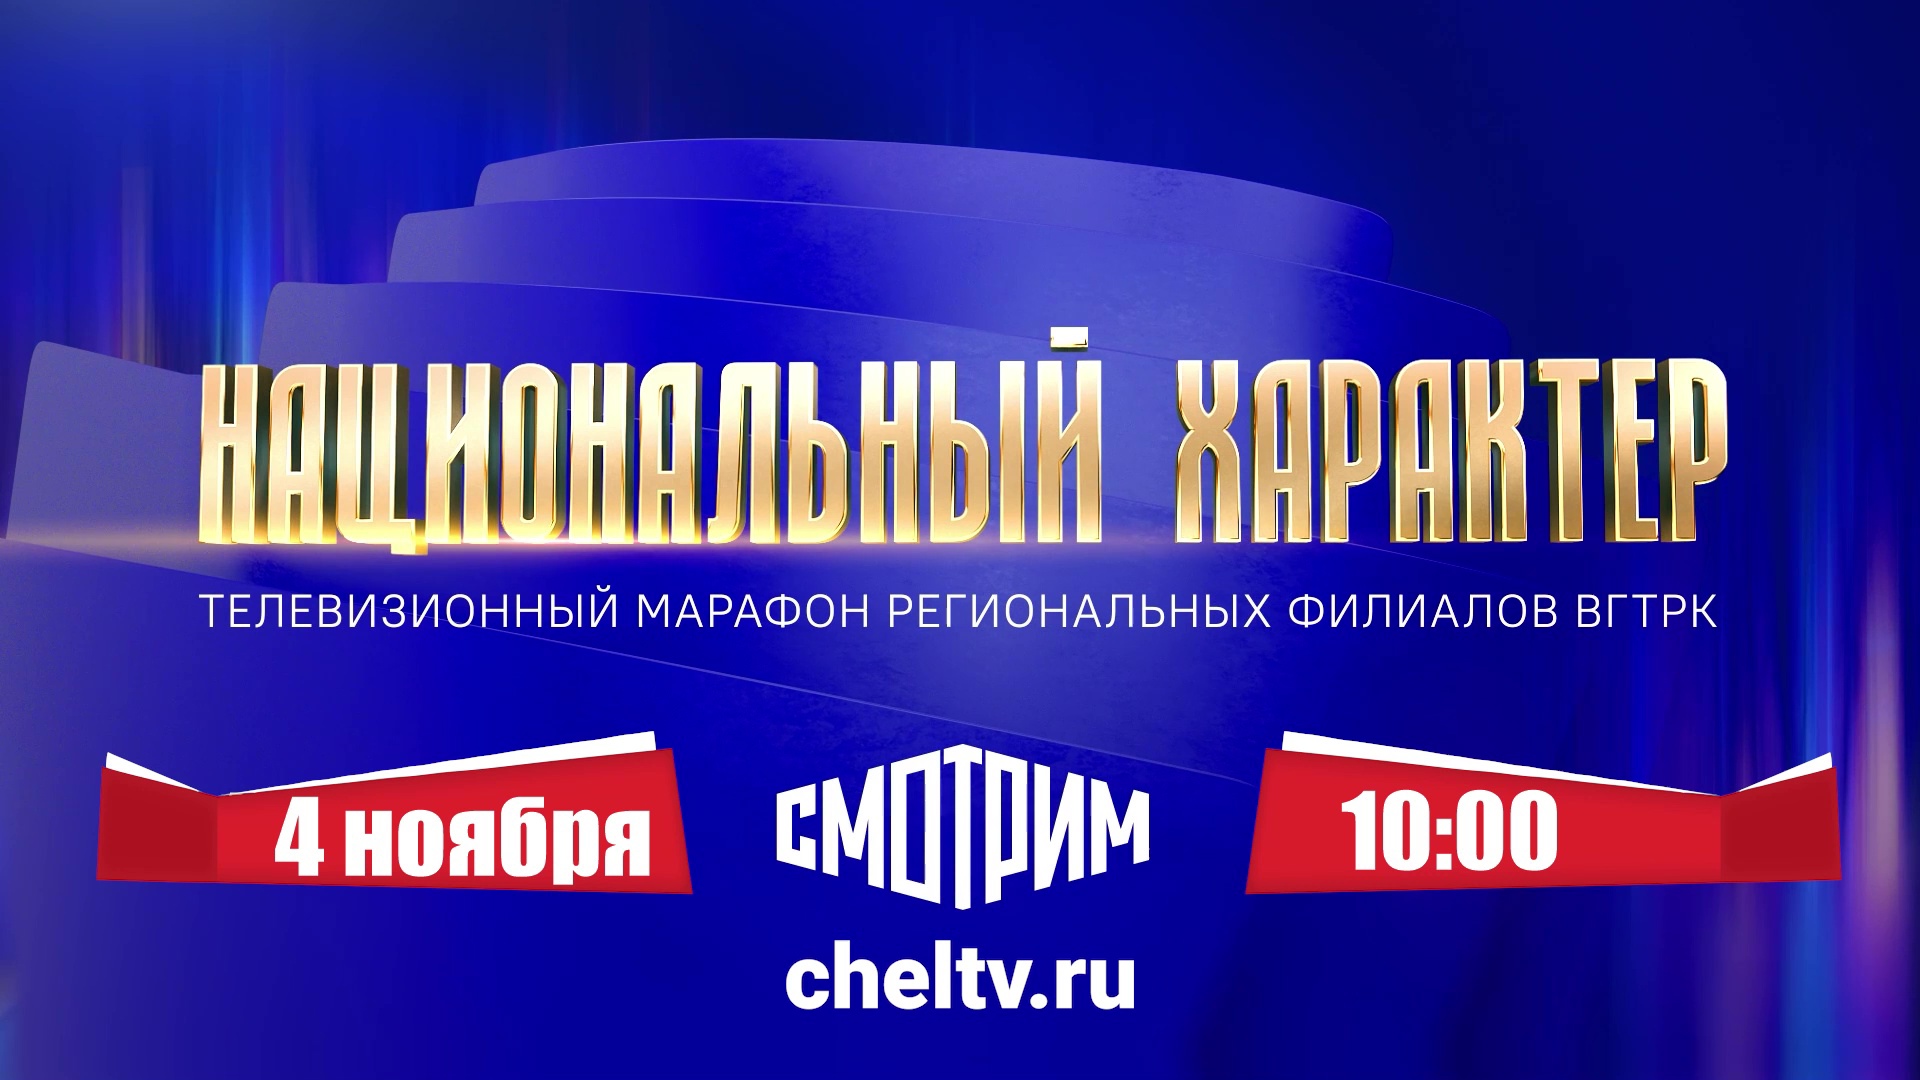 Челябинская область готовится к масштабному телемарафону "Национальный характер"